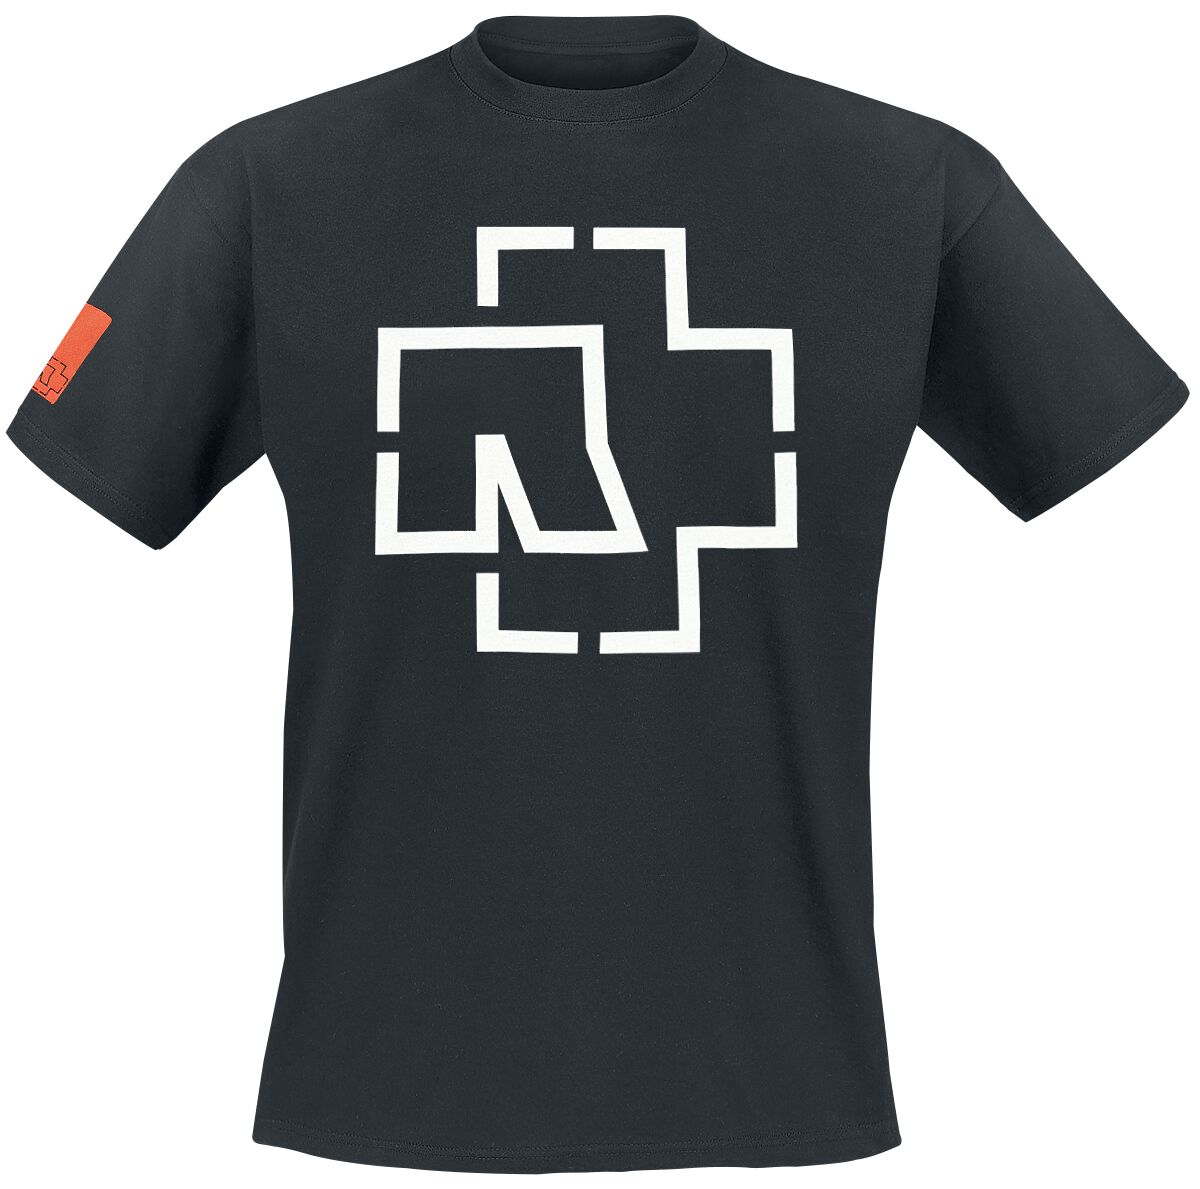 Rammstein T-Shirt - Logo - S bis 3XL - für Männer - Größe M - schwarz  - Lizenziertes Merchandise!